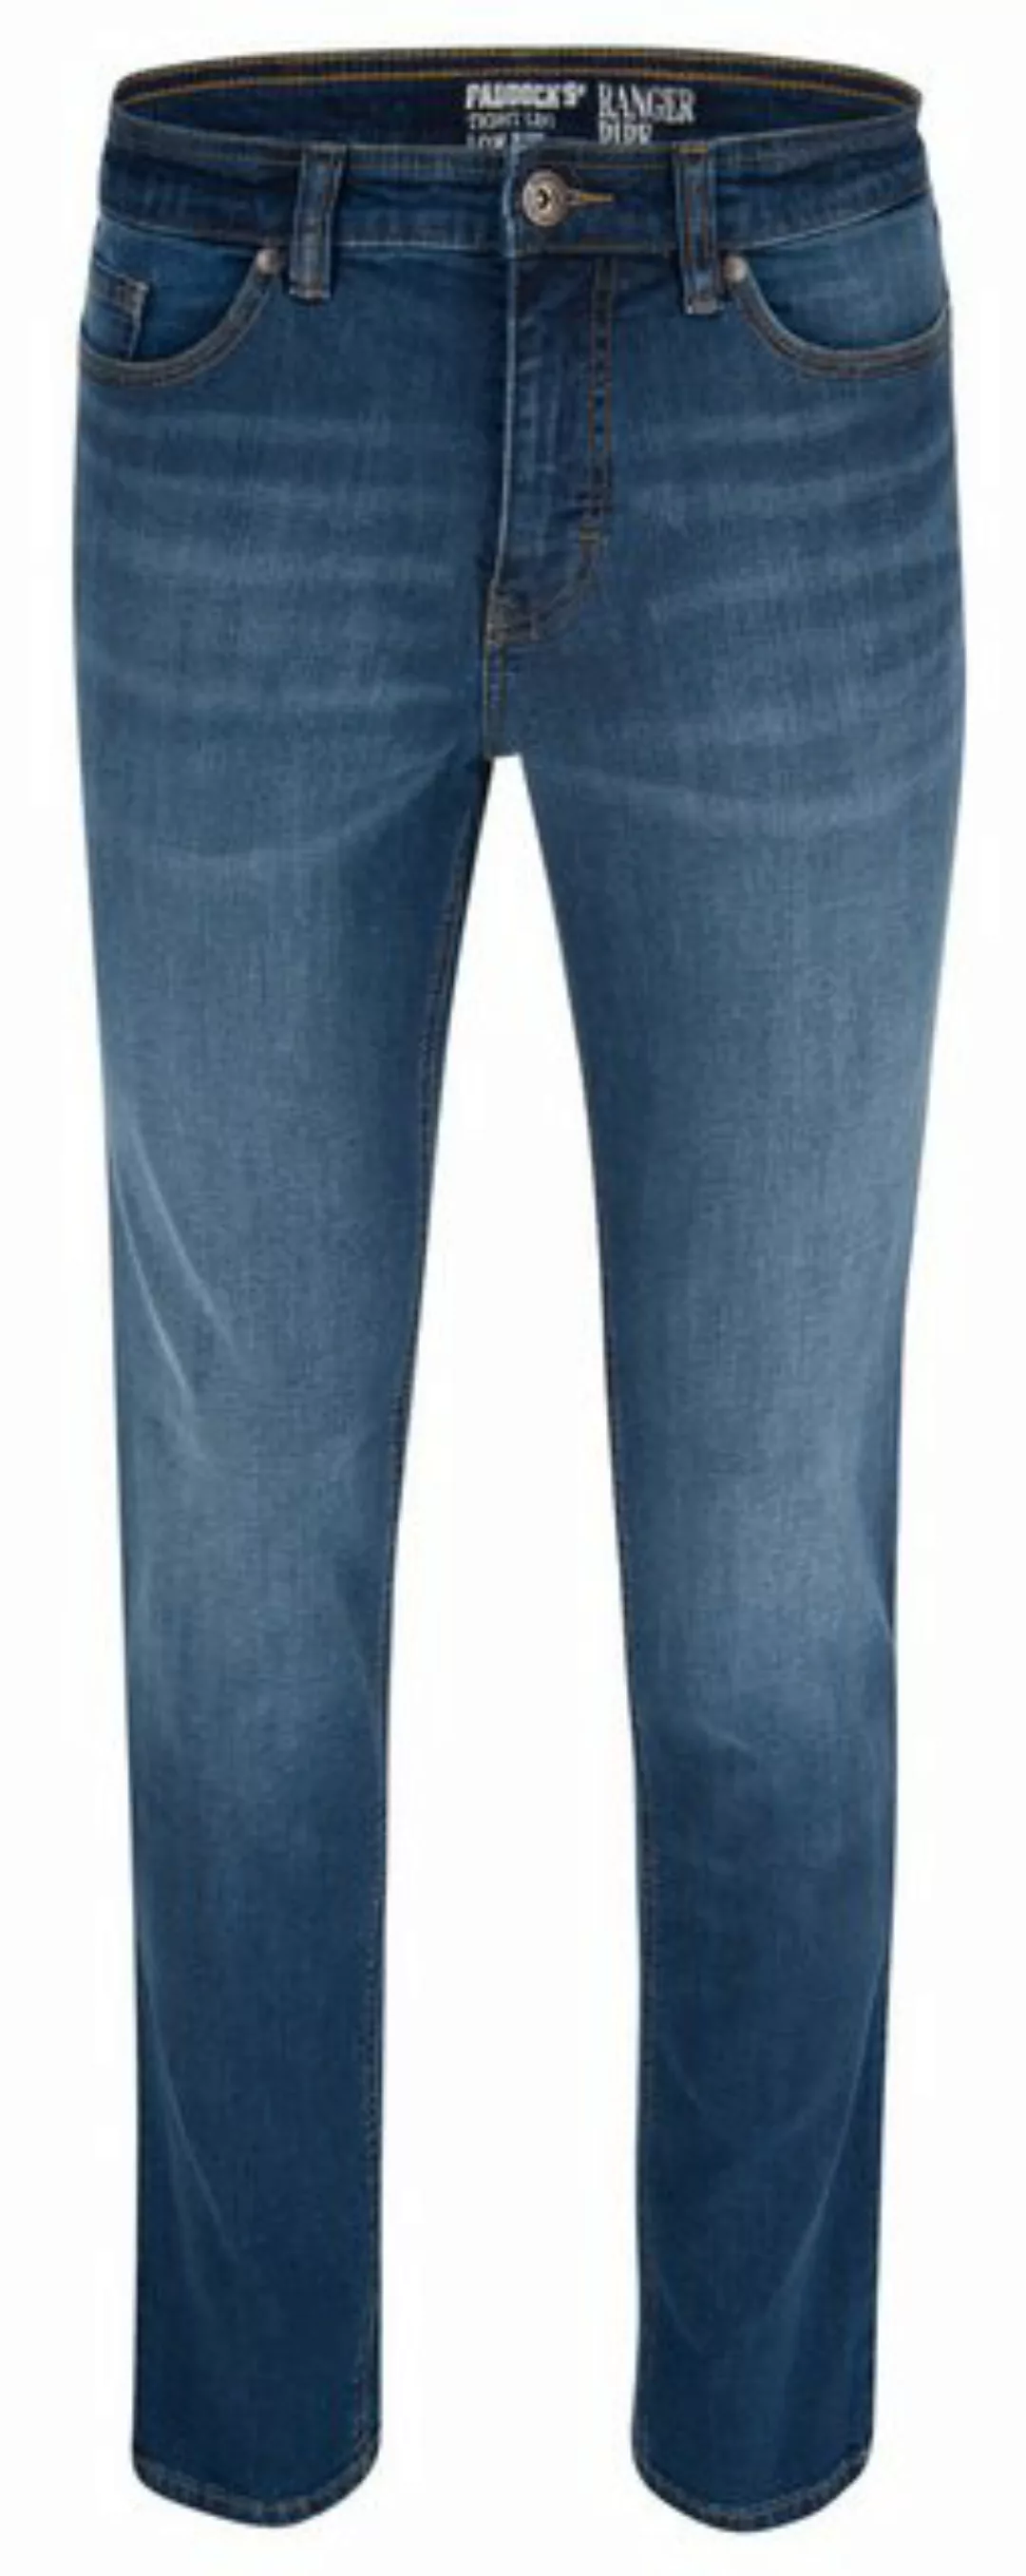 Paddock's 5-Pocket-Jeans PADDOCKS RANGER PIPE medium blue 80120 4981.4540 günstig online kaufen